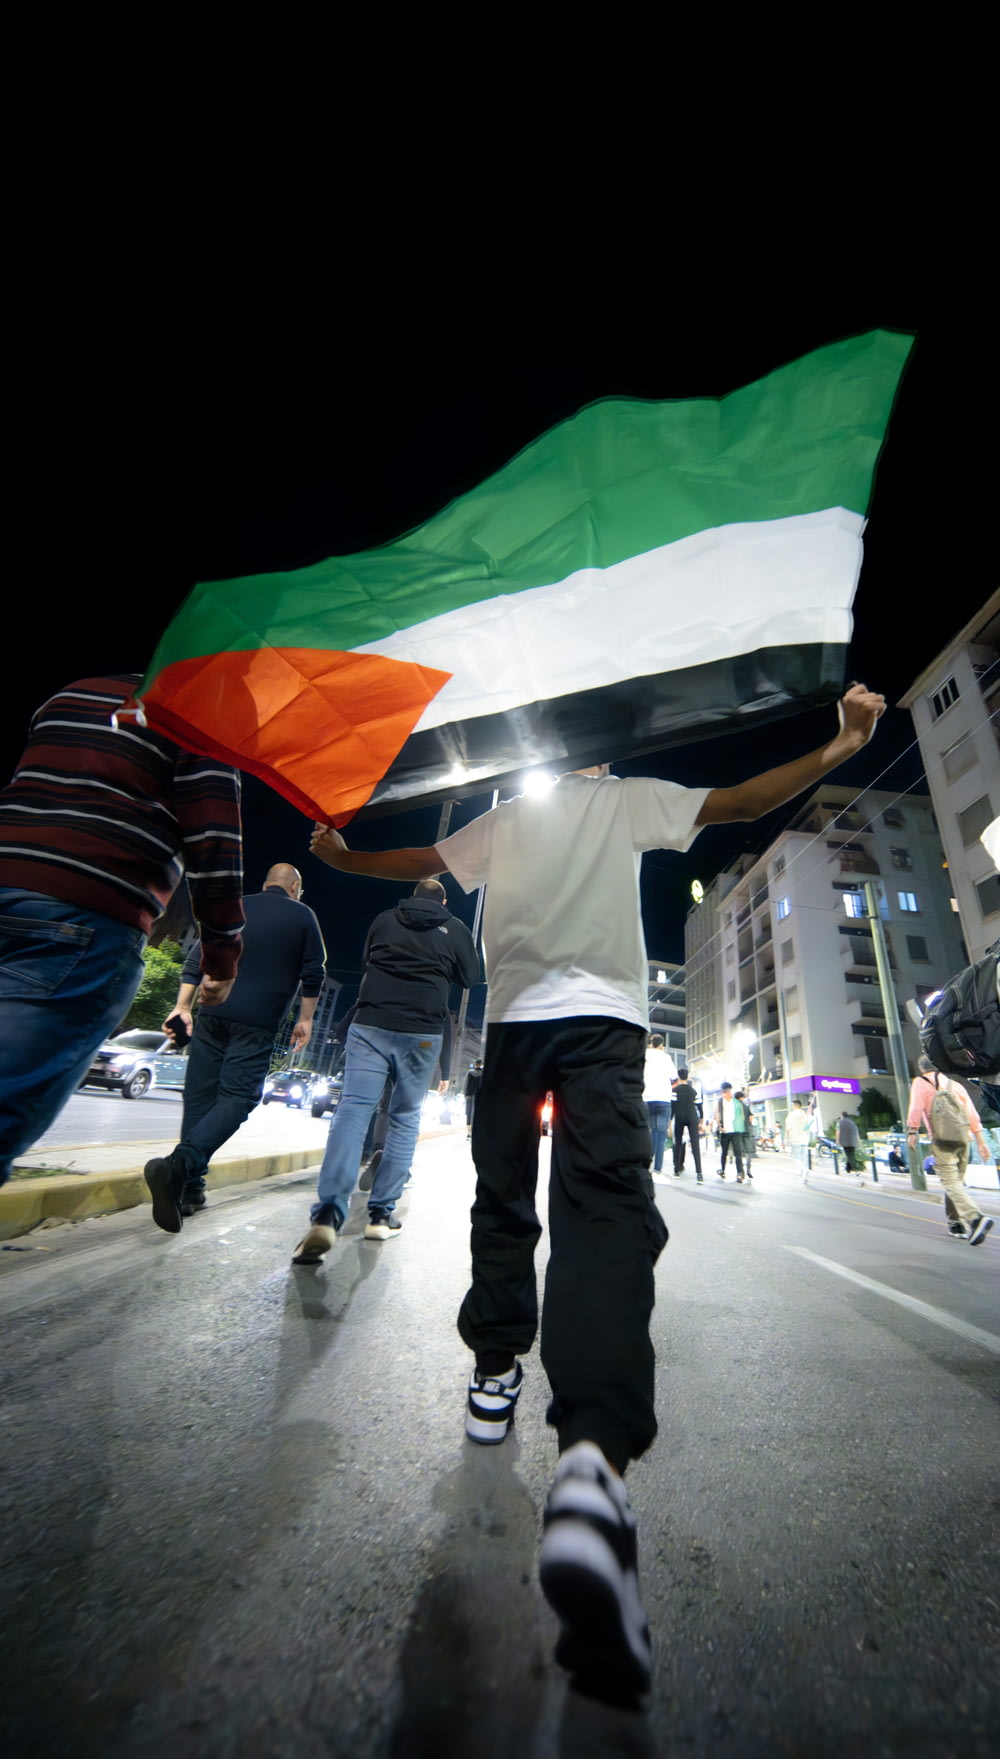 Un grupo de personas caminando por una calle sosteniendo una bandera